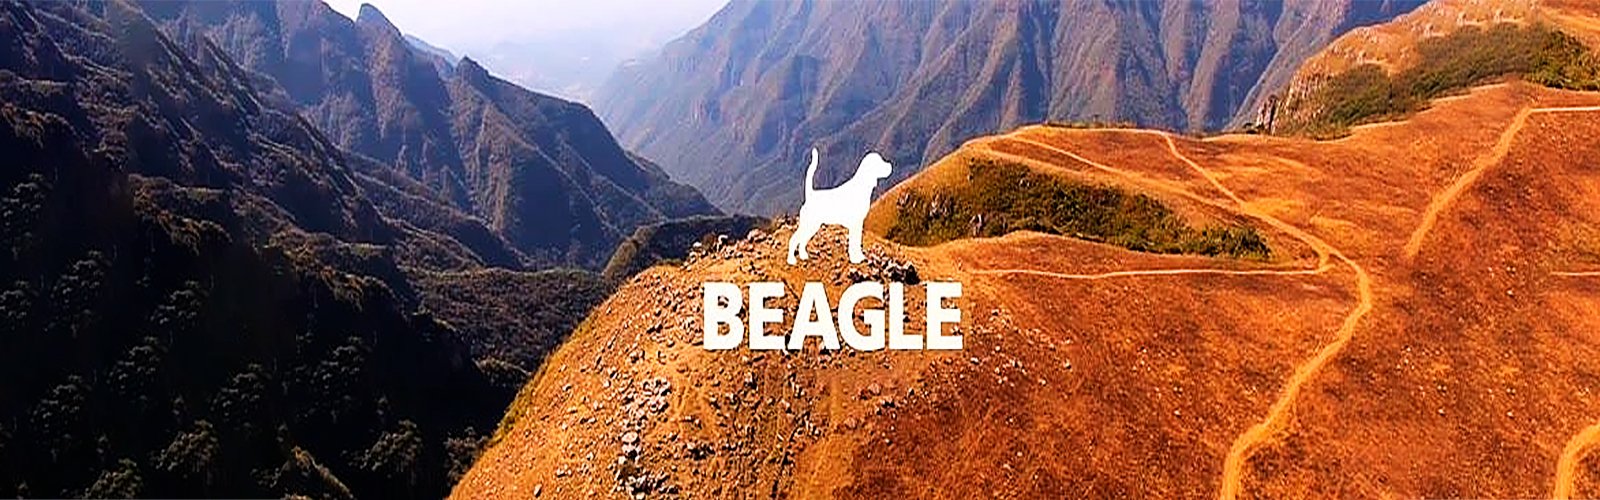 beagle-1600x500-1